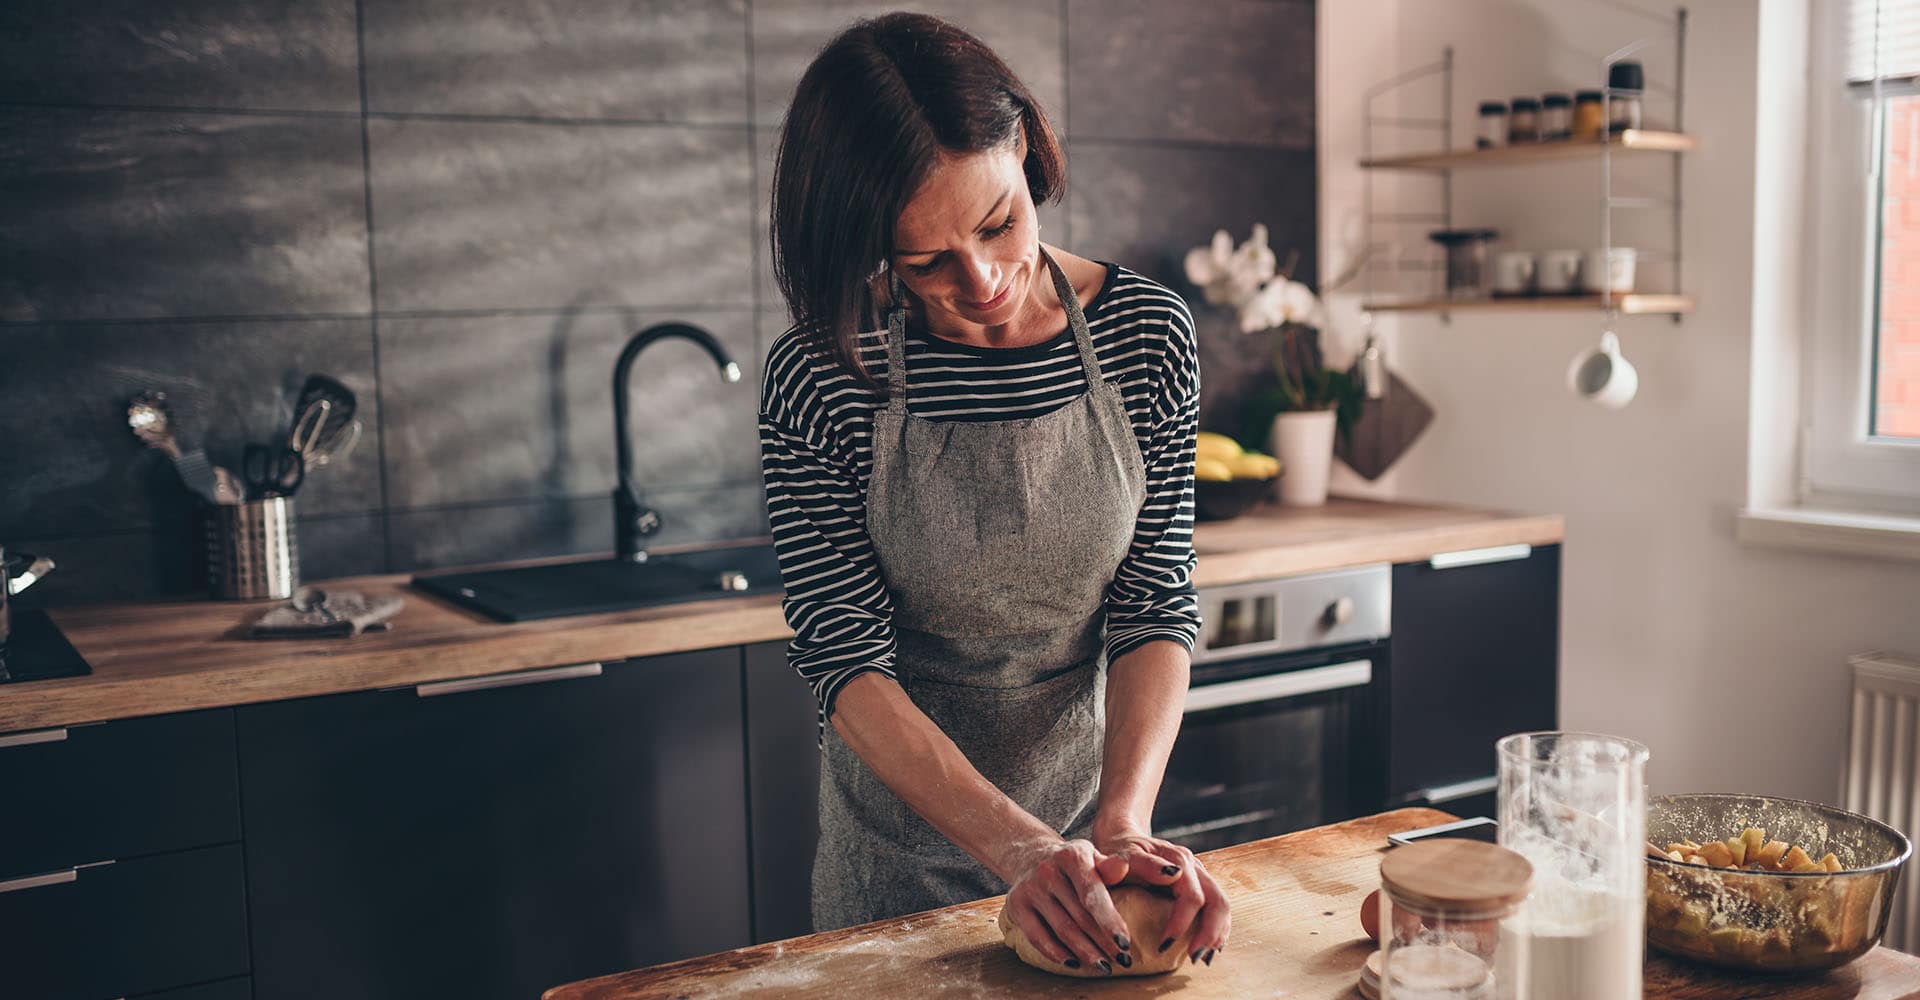 Woman baking bread in kitchen